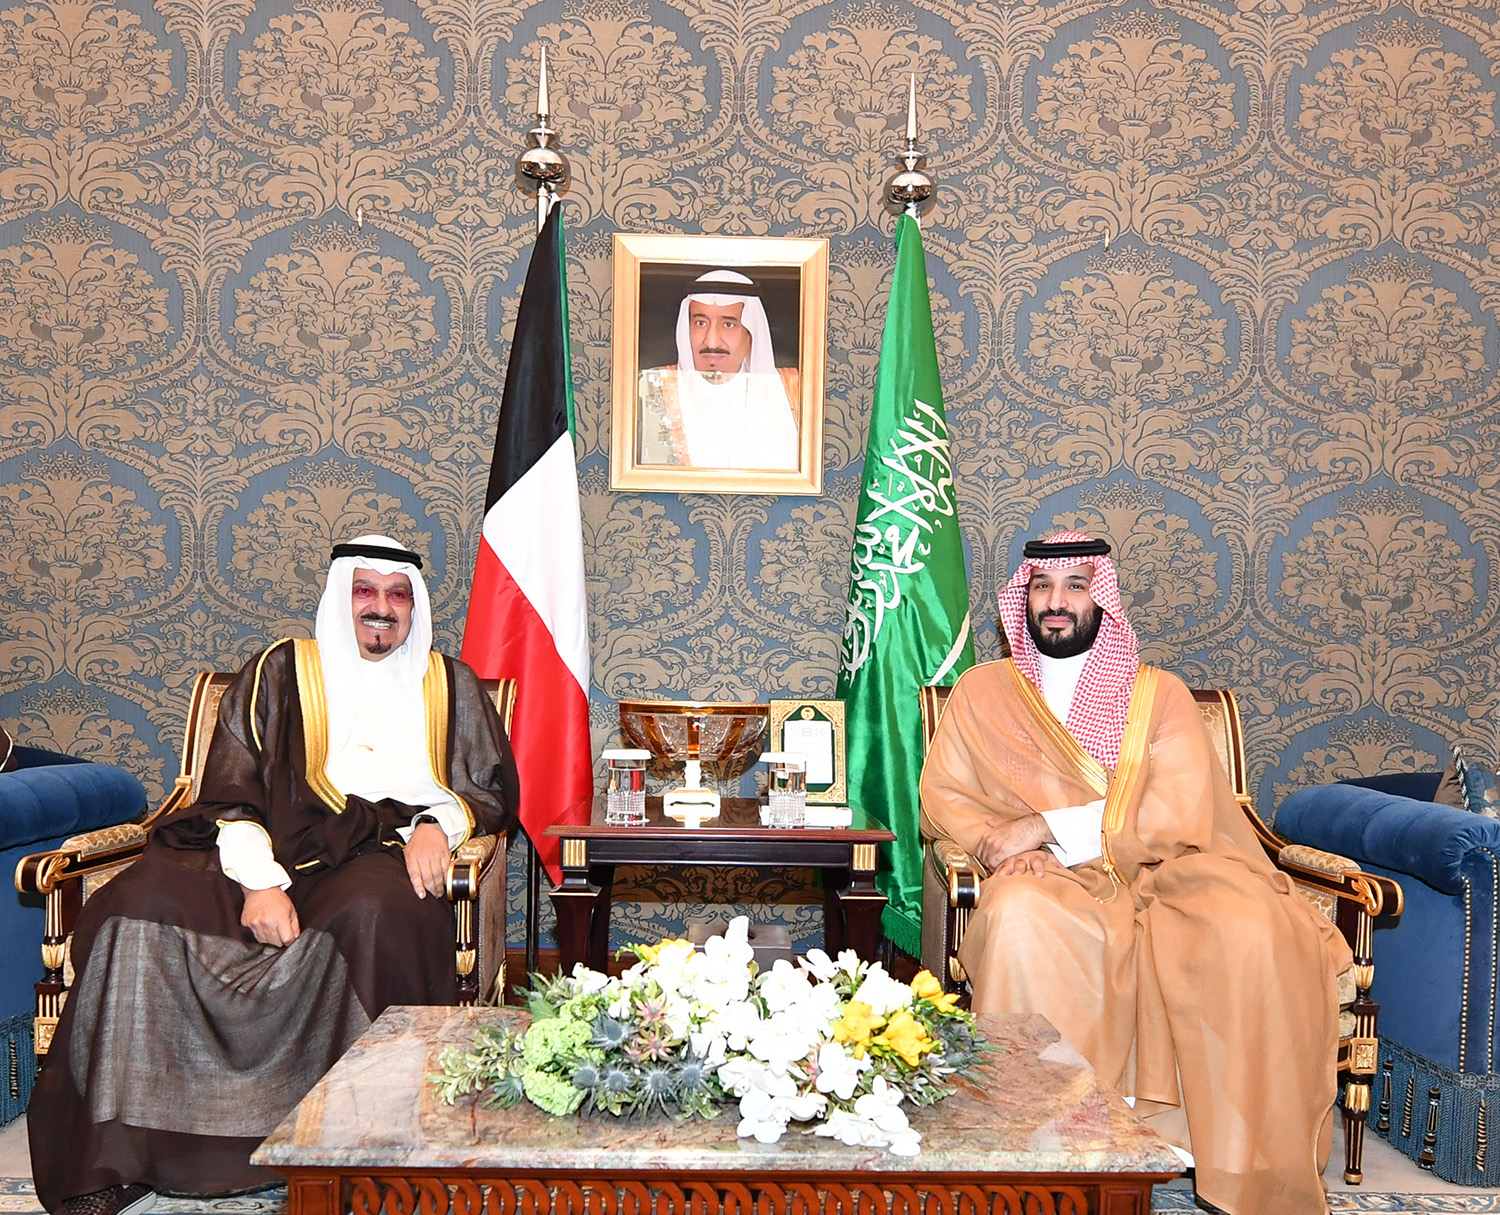 ممثل سمو أمير البلاد سمو رئيس مجلس الوزراء يلتقي ولي العهد السعودي على هامش مؤتمر القمة العربية بالمنامة